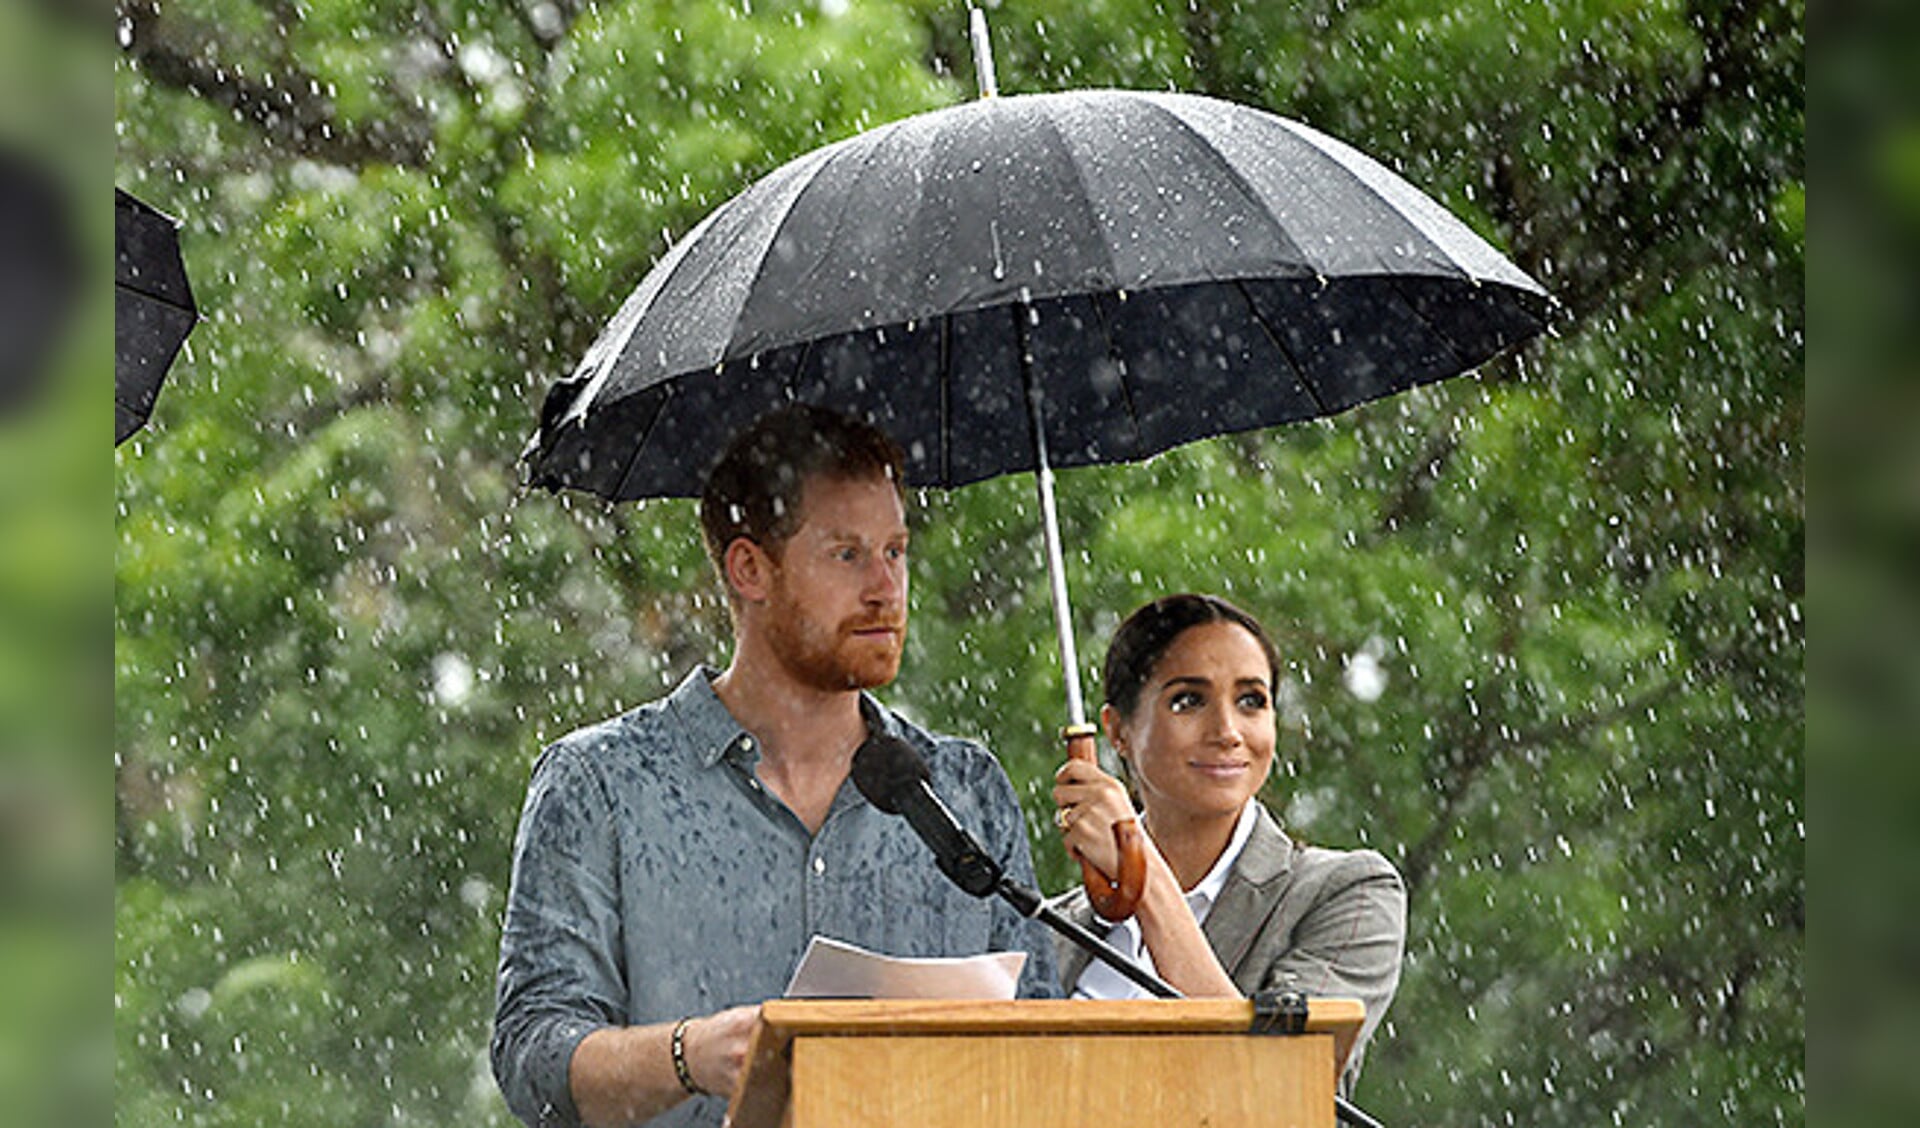 Prins Harry spreekt de in het Victoria Park verzamelde menigte toe vanonder een paraplu.